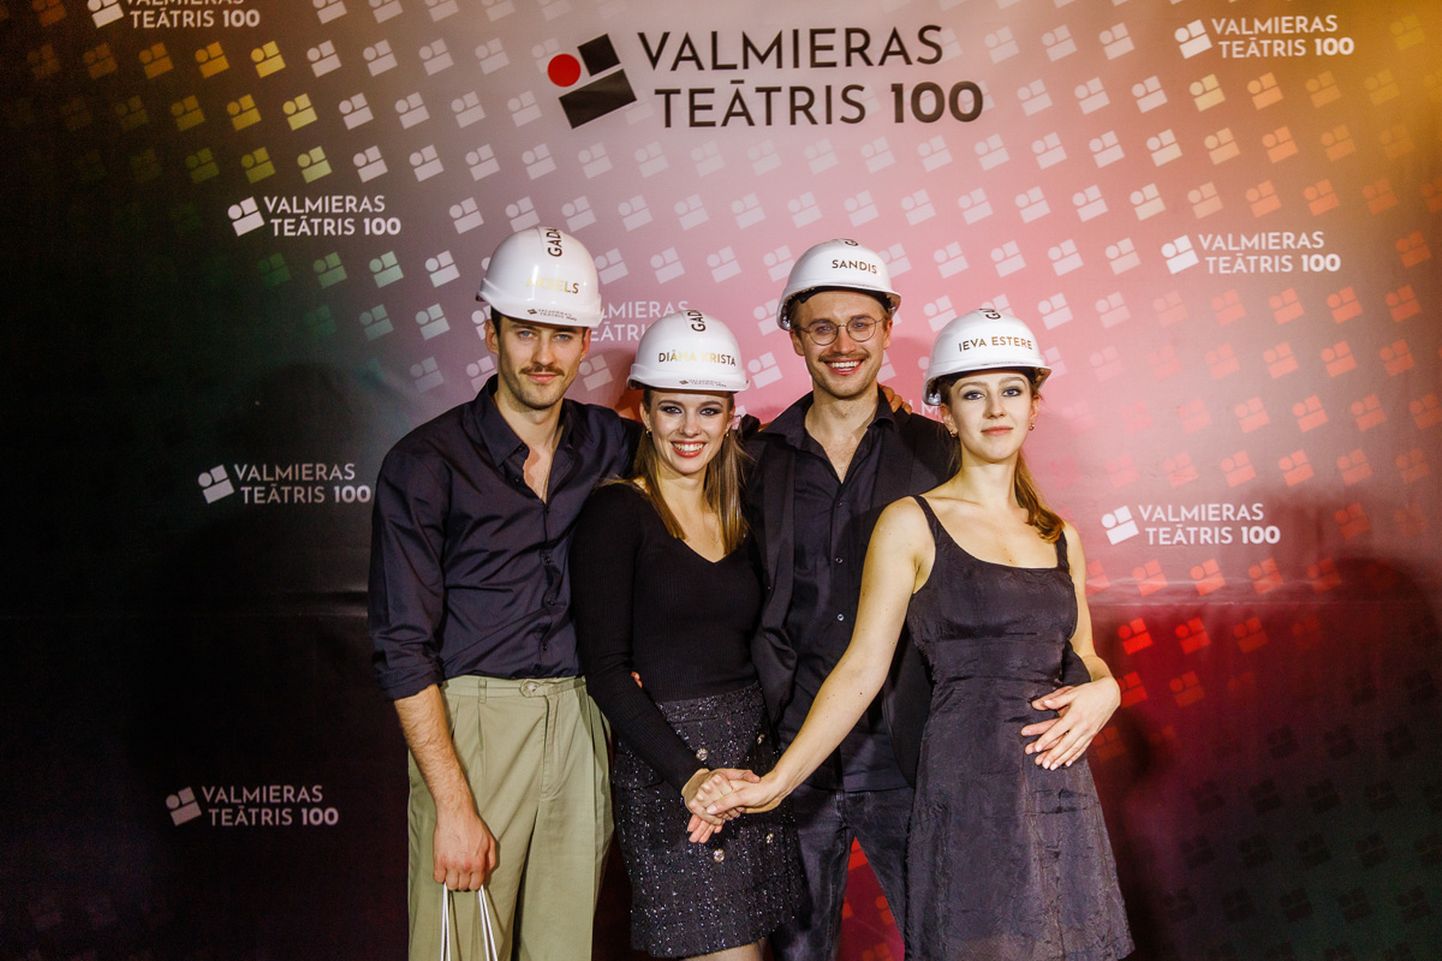 No labās: Valmieras teātra aktieri Aksels Aizkalns, Diāna Krista Stafecka, Sandis Runge un Ieva Estere Barkāne